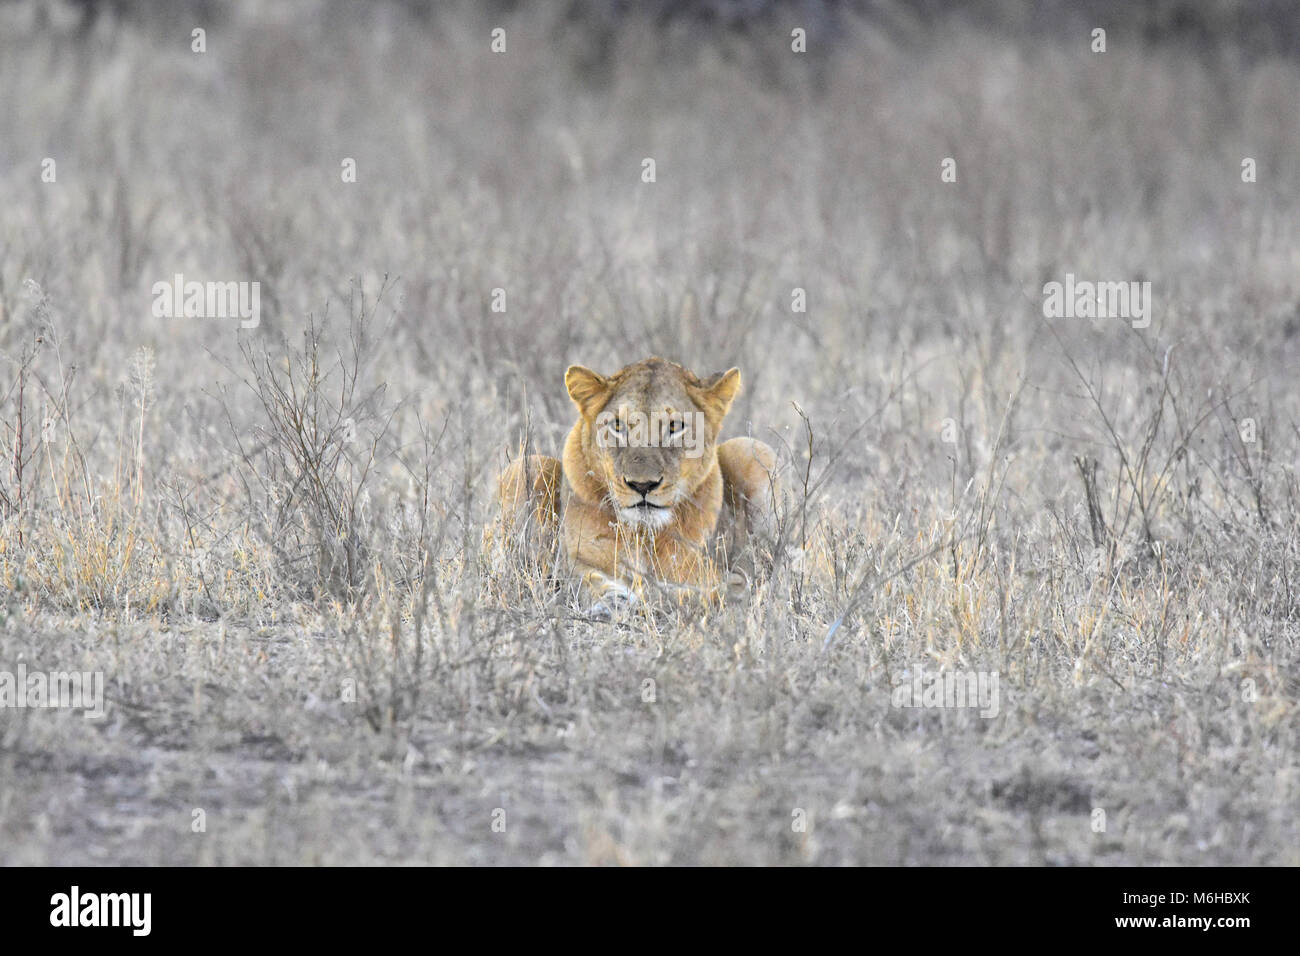 Kruger Park, Afrique du Sud. Panthera leo lionne dans l'herbe morte à regarder la caméra. Banque D'Images